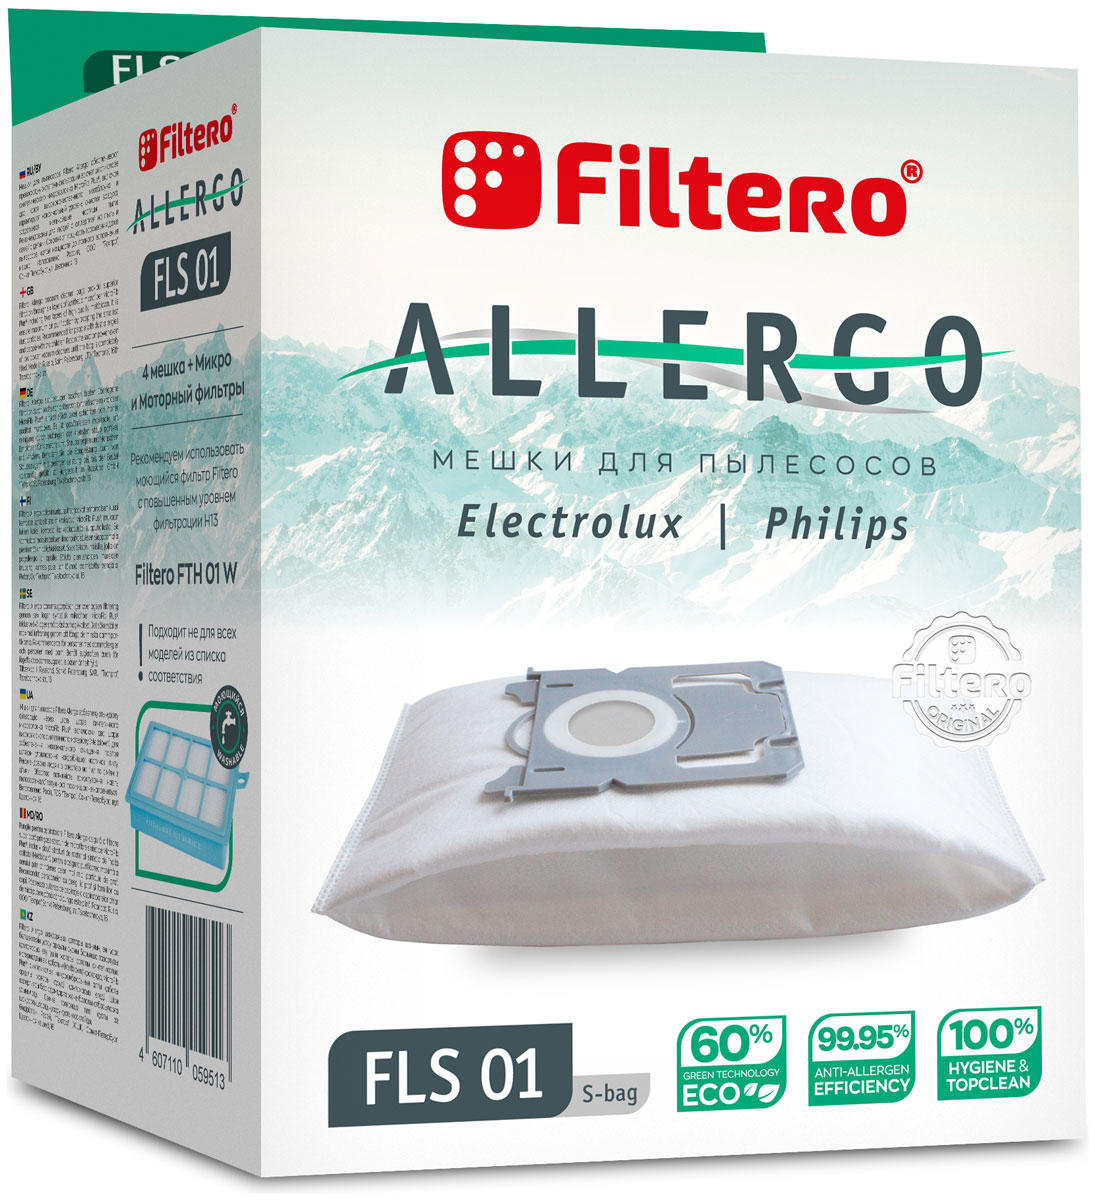 Пылесборники Filtero FLS 01 S-bag Allergo 4 шт. + моторный фильтр и микрофильтр пылесборники filtero fls 01 s bag allergo 4 шт моторный фильтр и микрофильтр